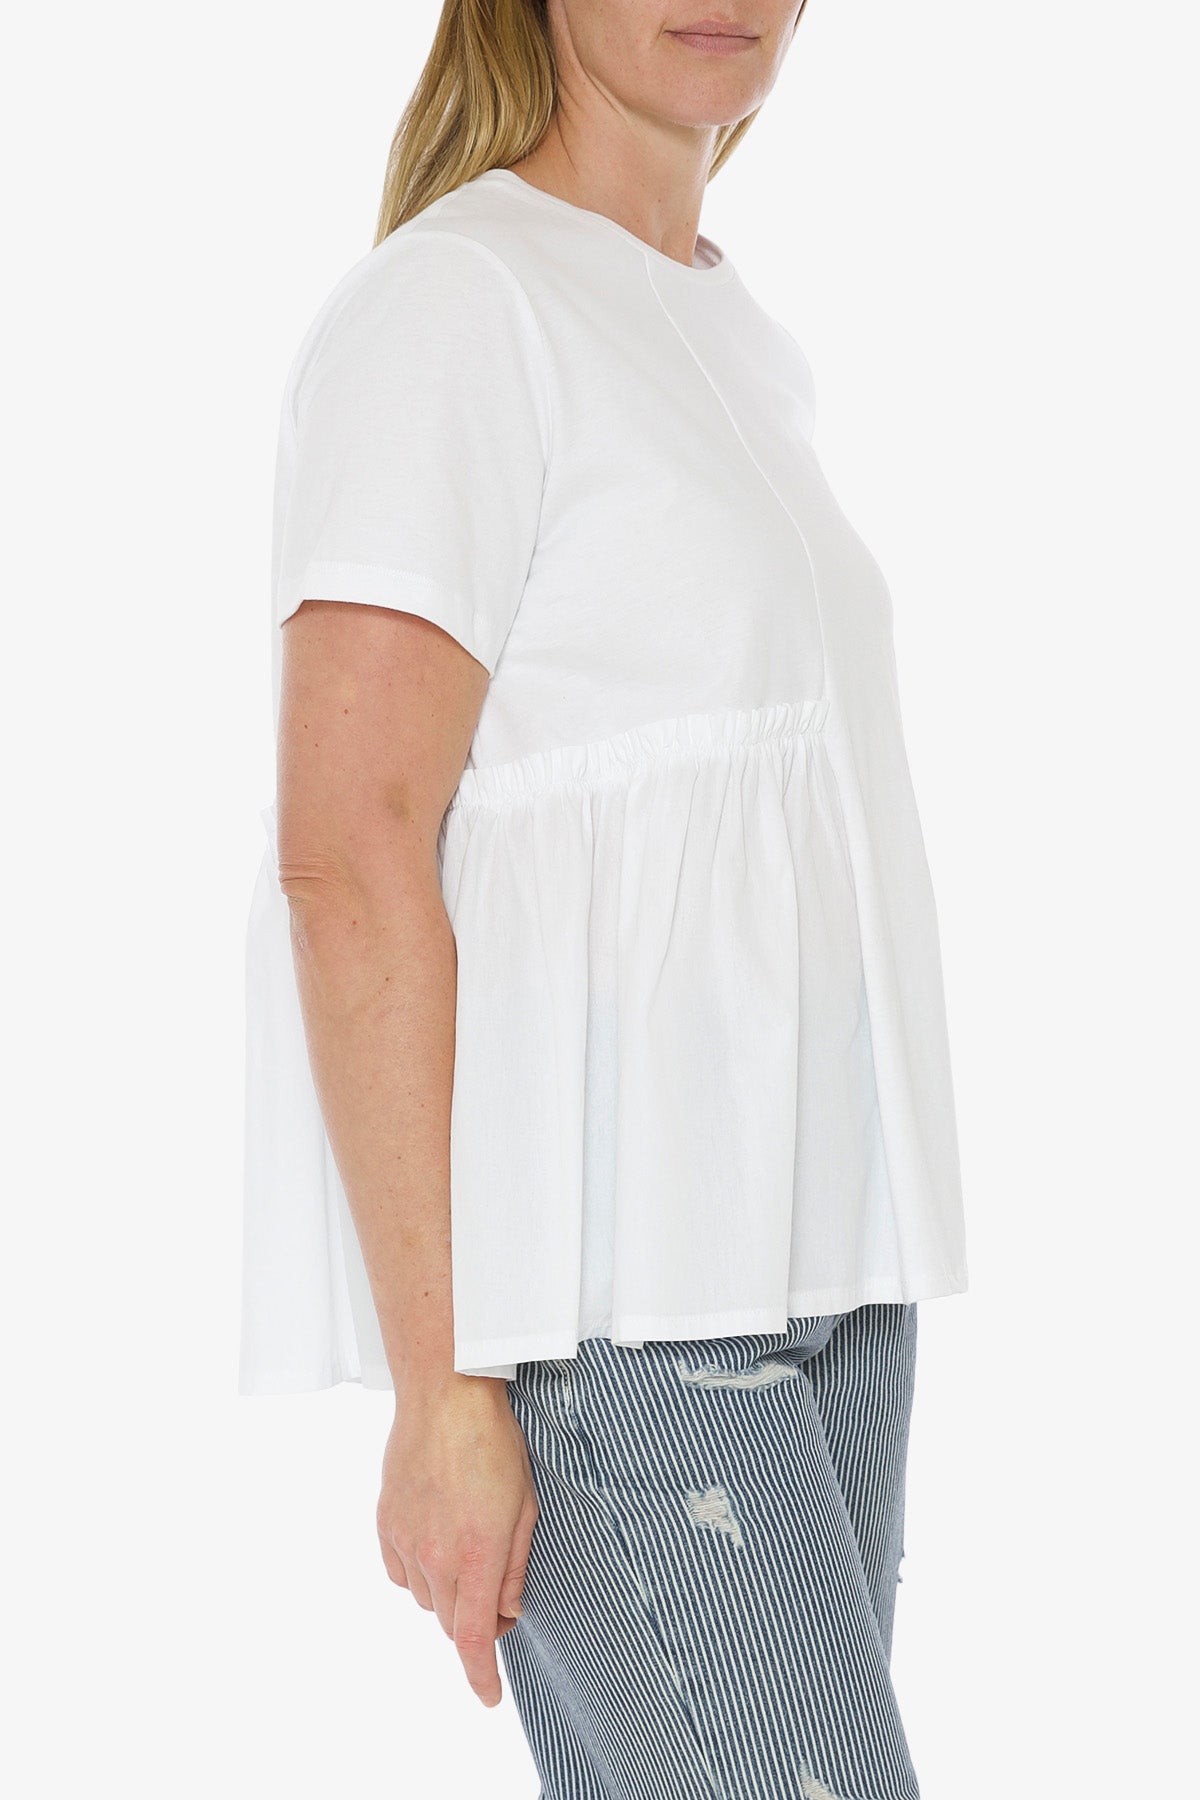 Spliced T-Shirt White